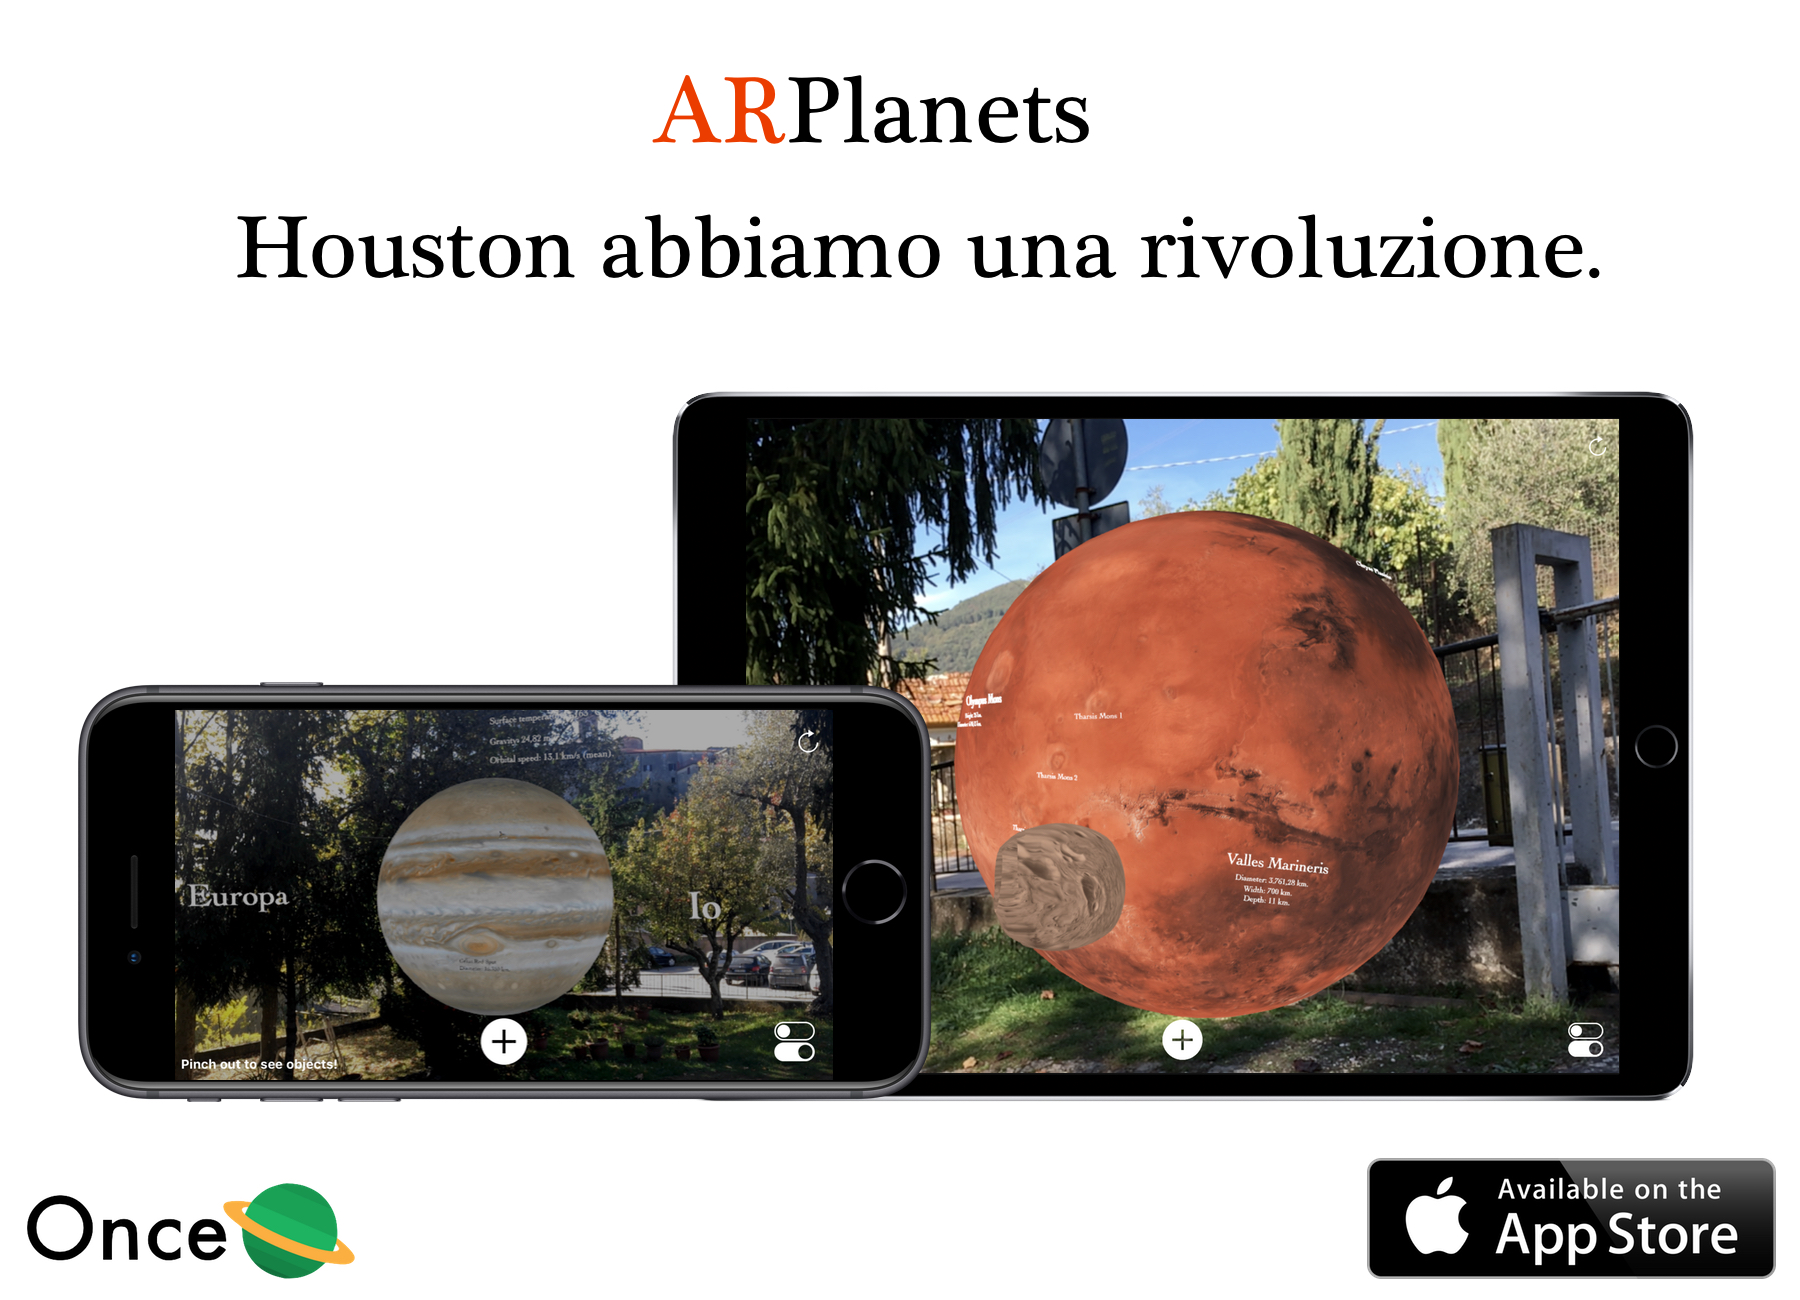 ARPlanets la app scientifica e astronomica del giovane programmatore versiliese Daniele Citi